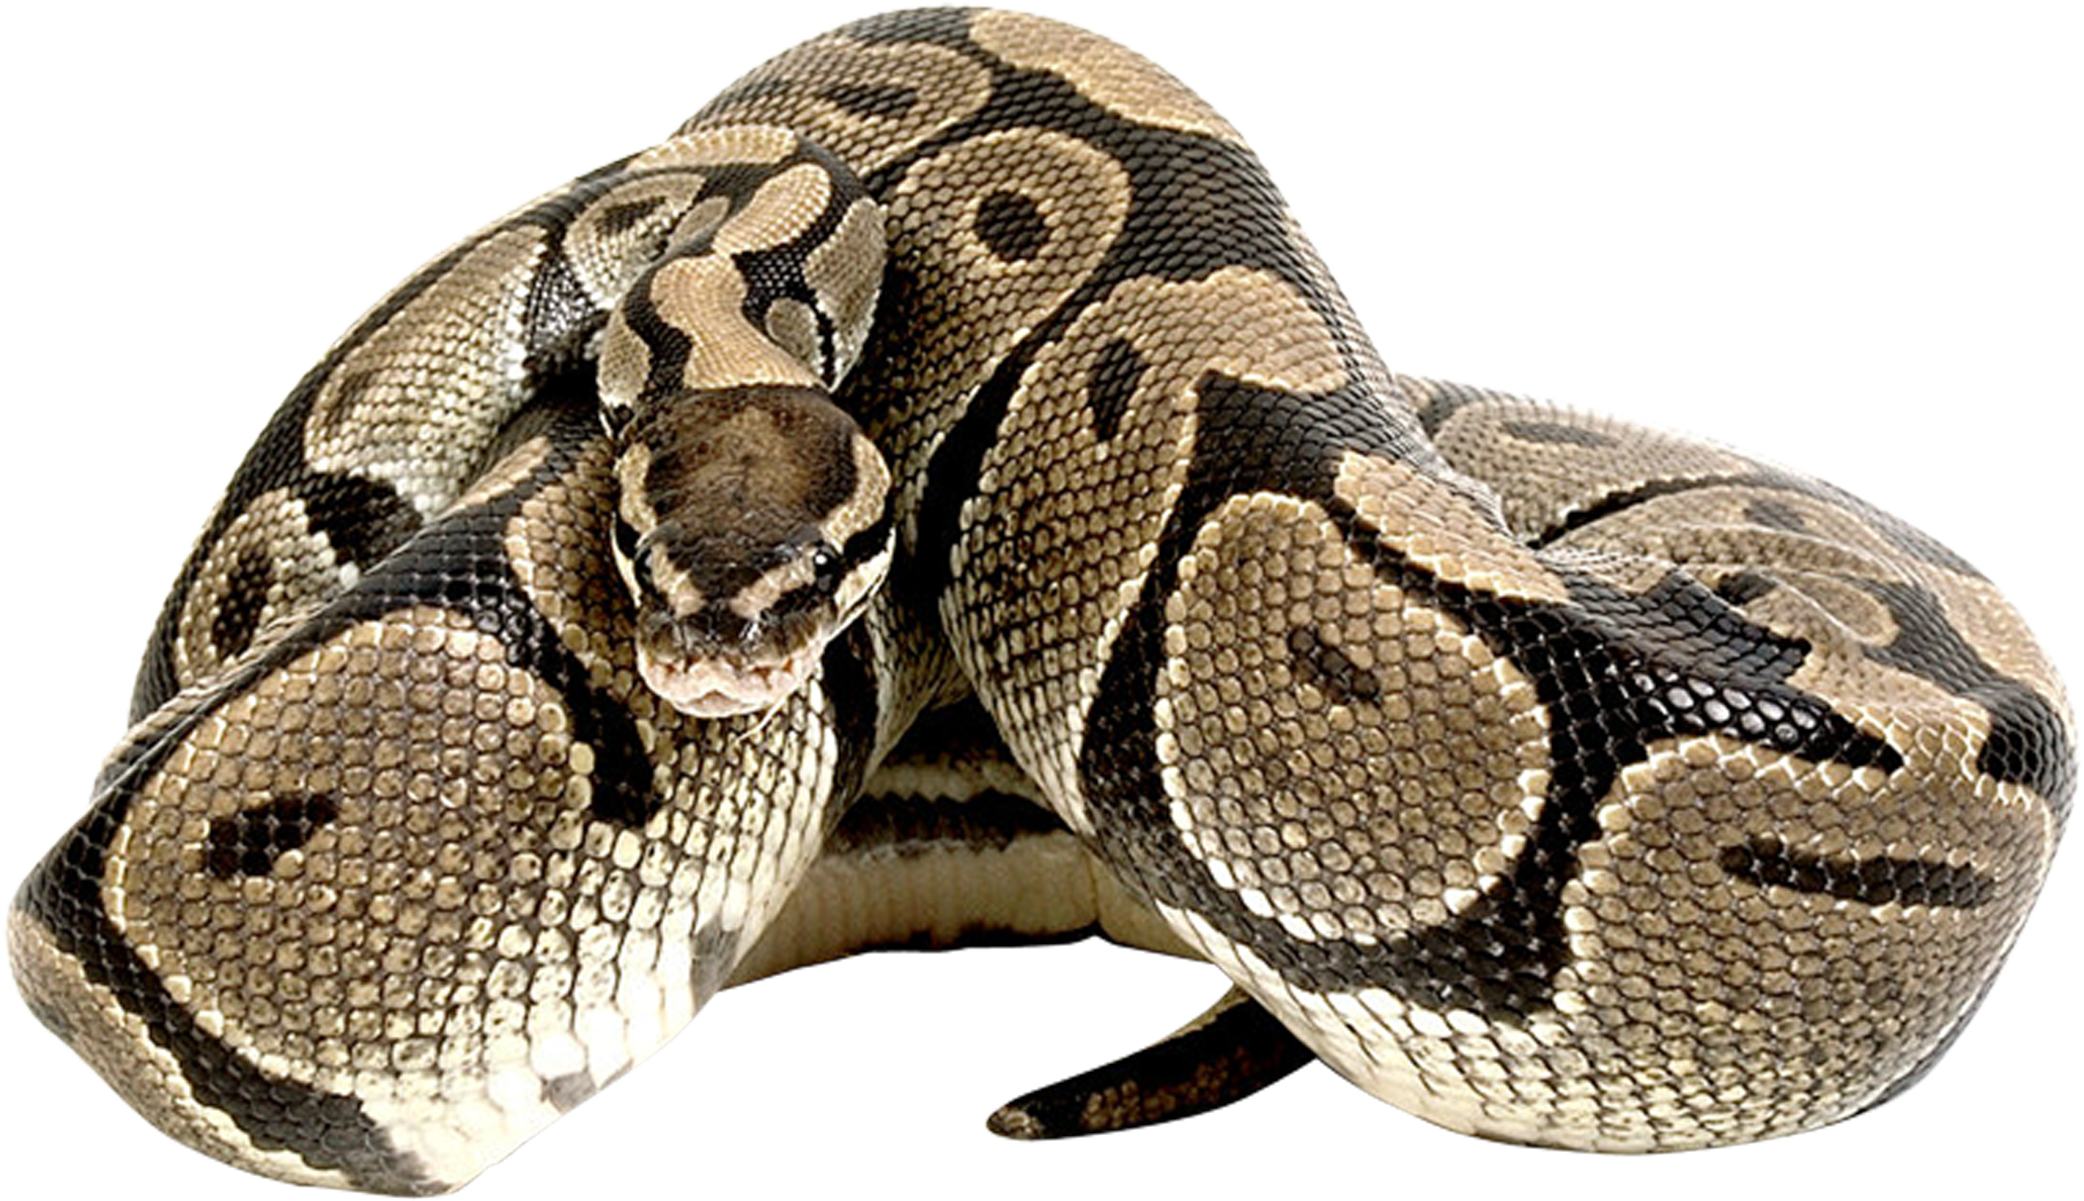 Common Anaconda Transparent Image